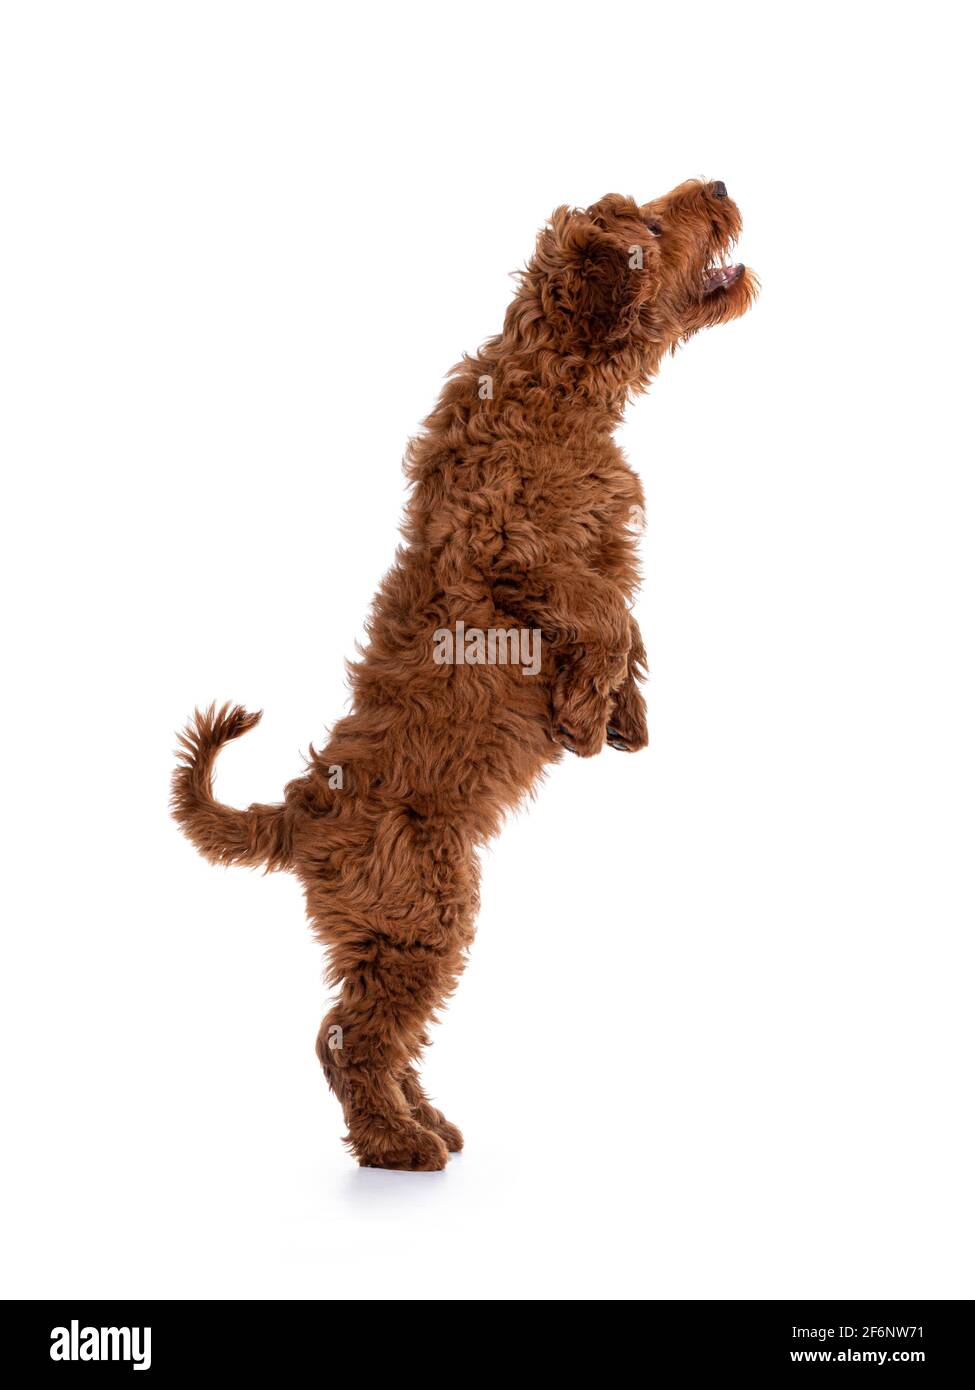 Vista laterale dell'adorabile cucciolo rosso Cobberdog aka Labradoodle cane, saltando in su. Isolato su sfondo bianco. Foto Stock